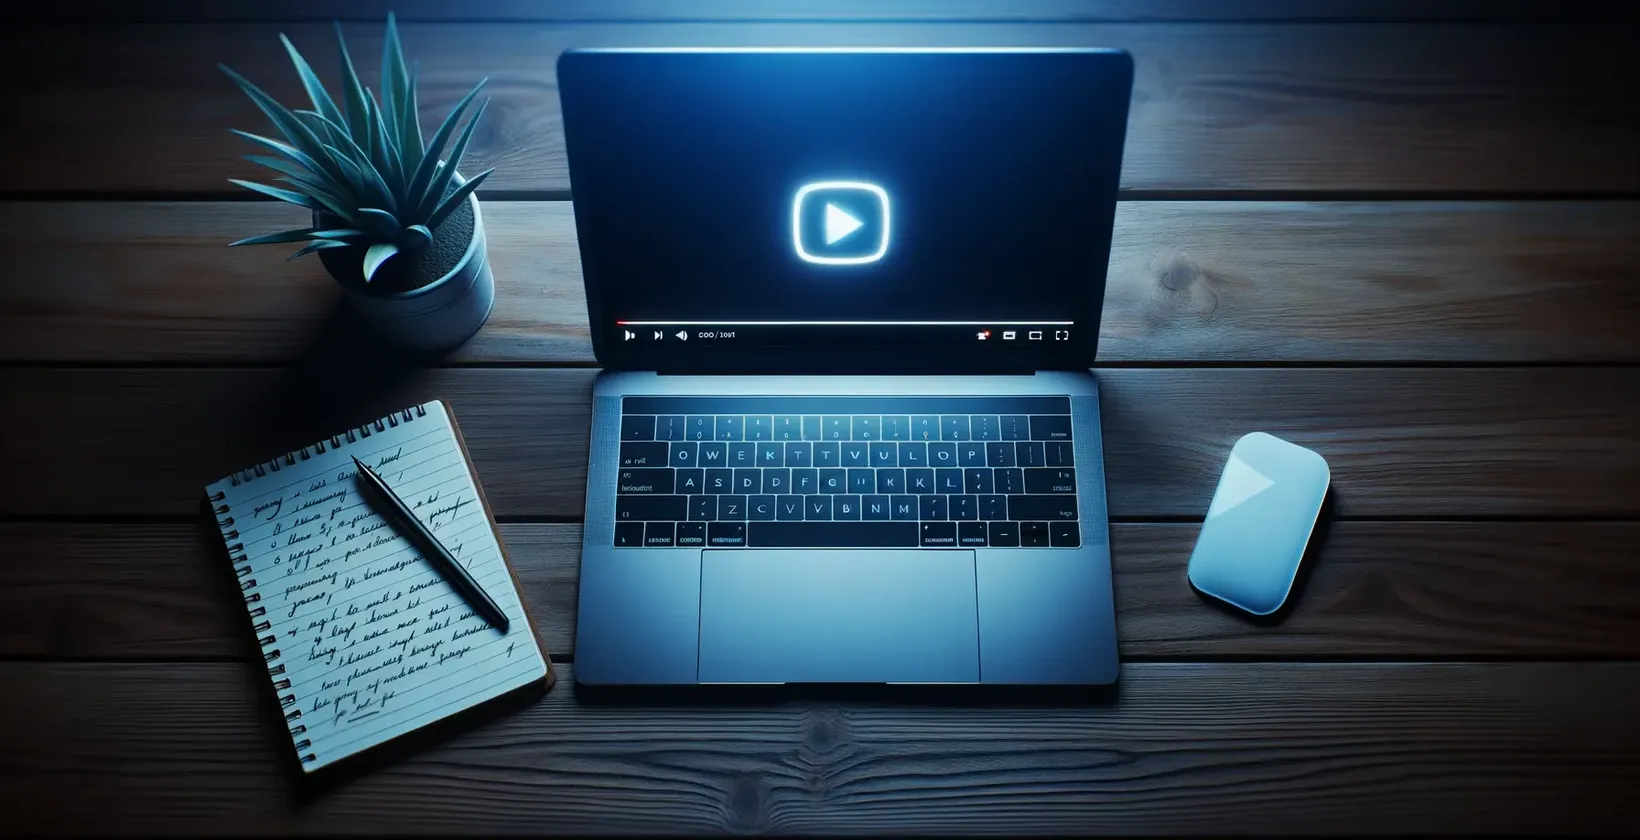 Legg til tekst i video med KineMaster scene viser en bærbar PC med avspillingsikon på den bærbare PC-en